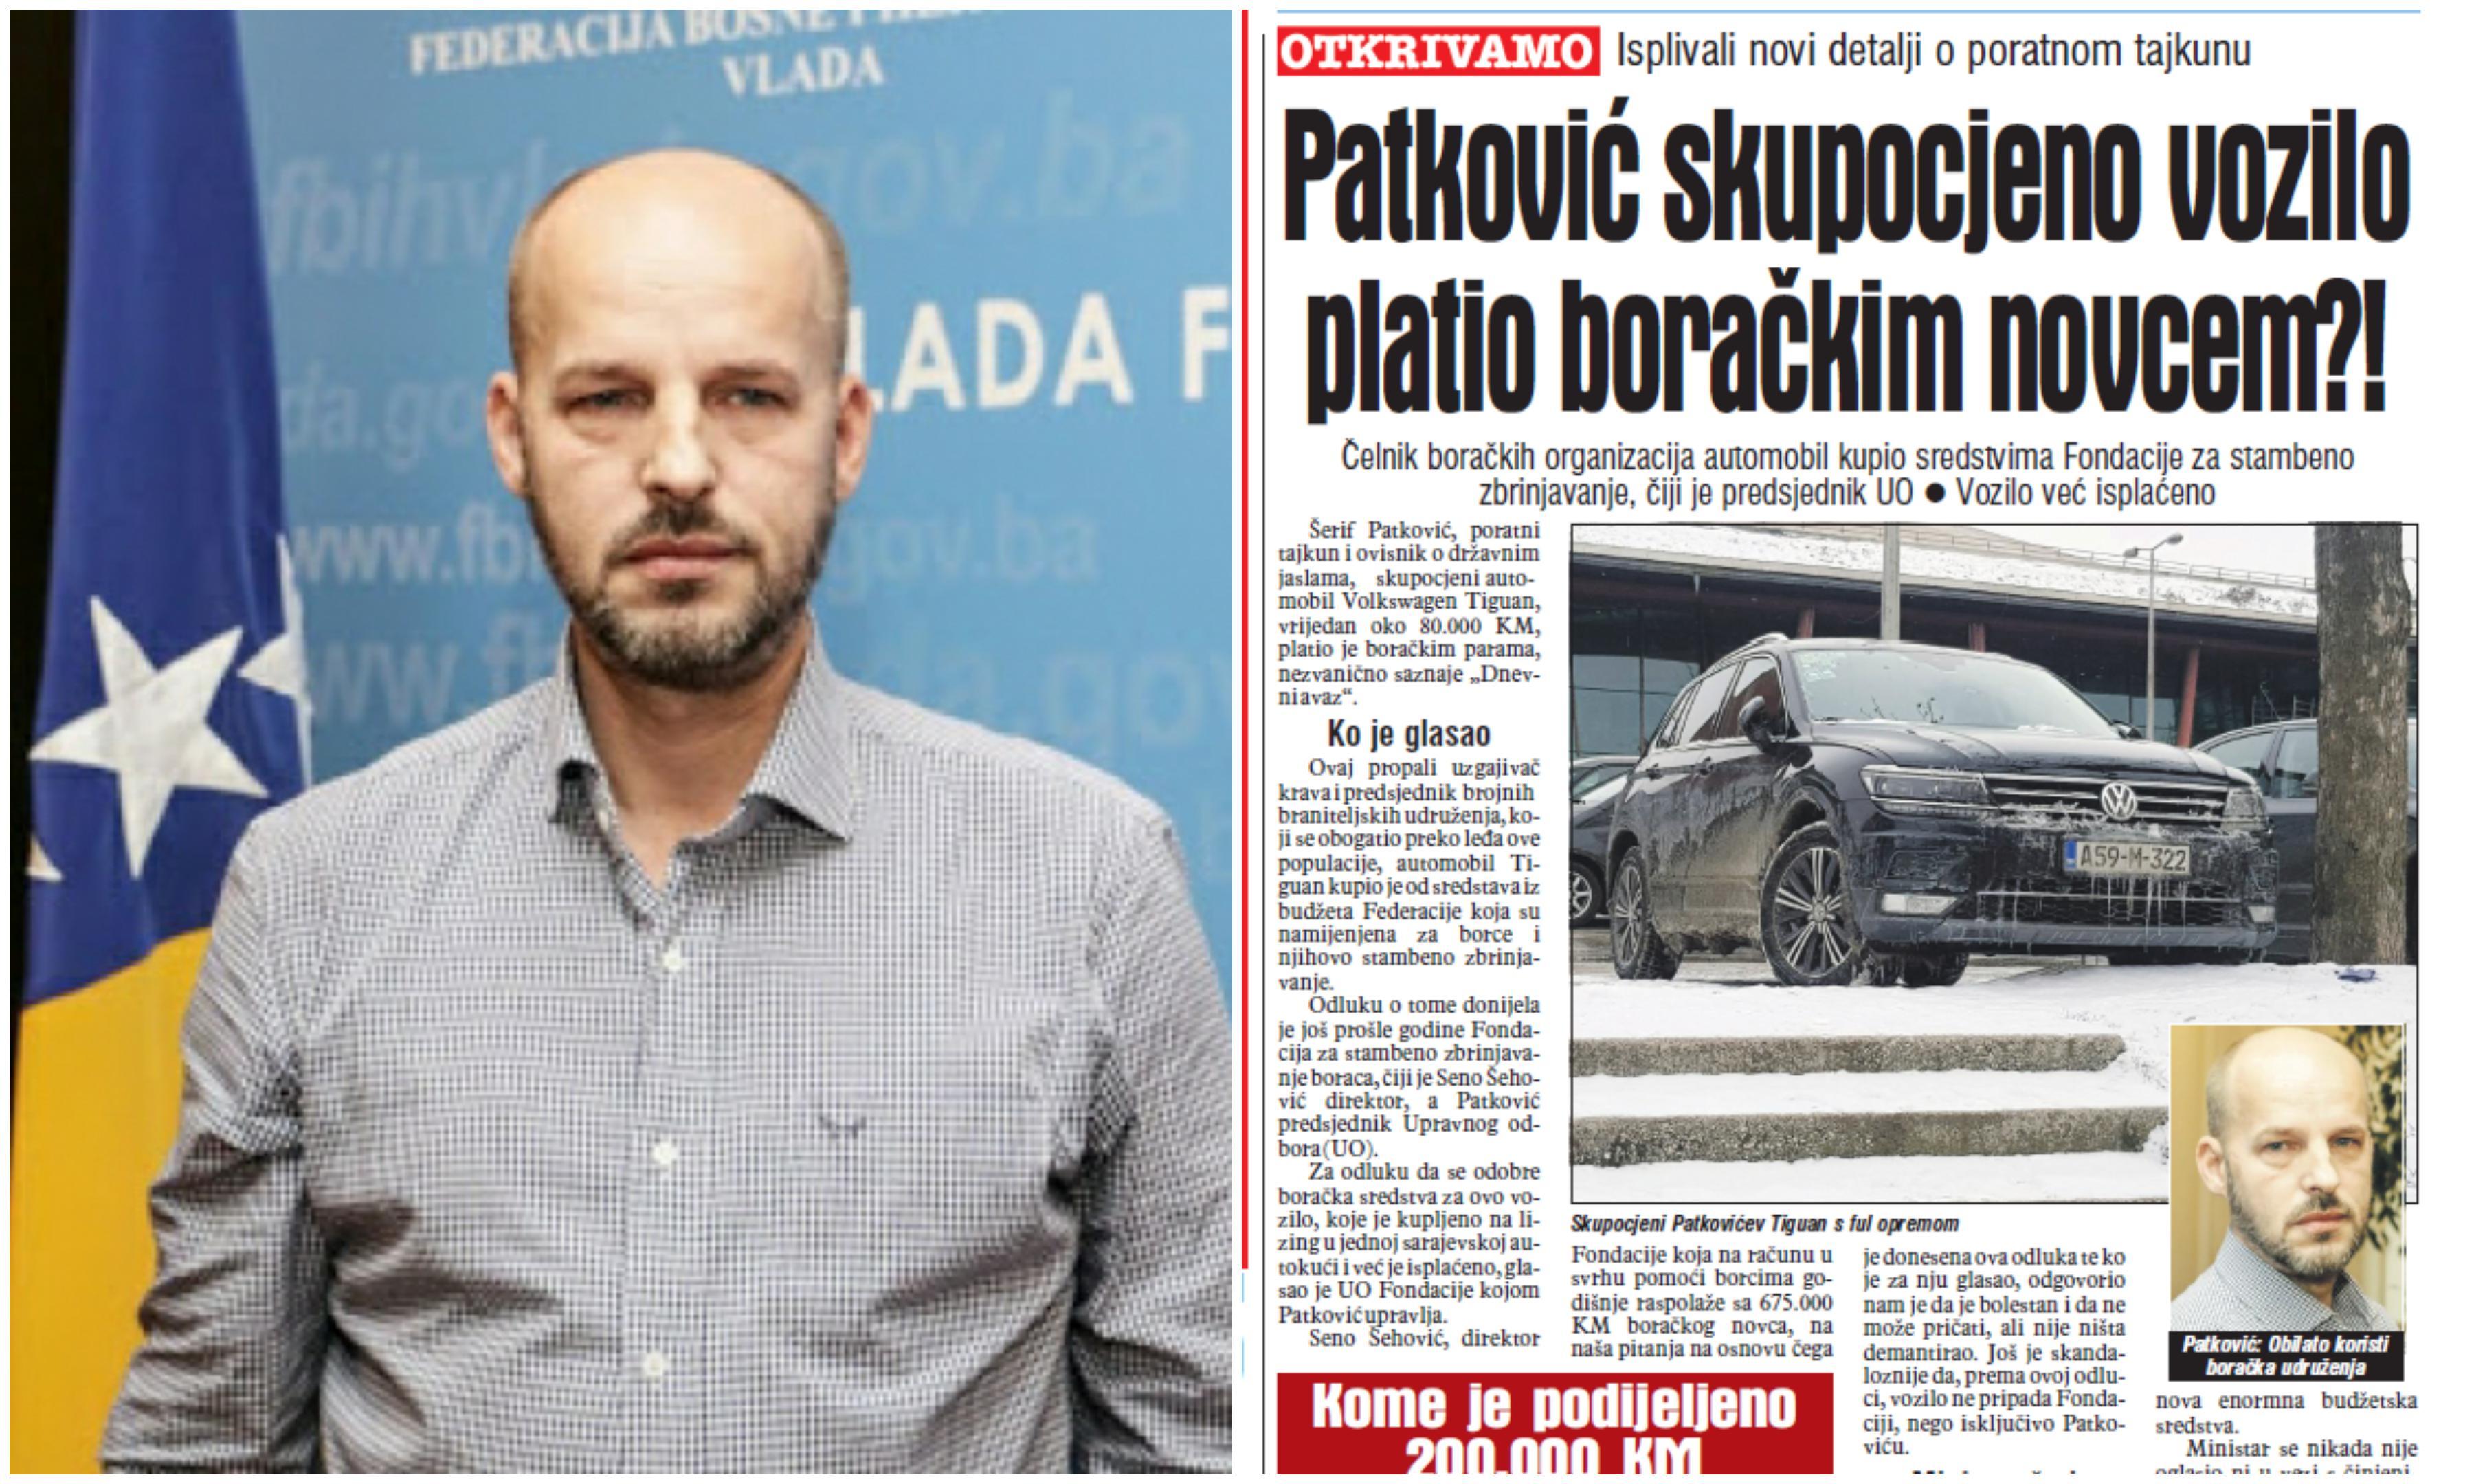 Patković: Kupio skupocjeni Volkswagen Tiguan novcem sa računa Fondacije - Avaz